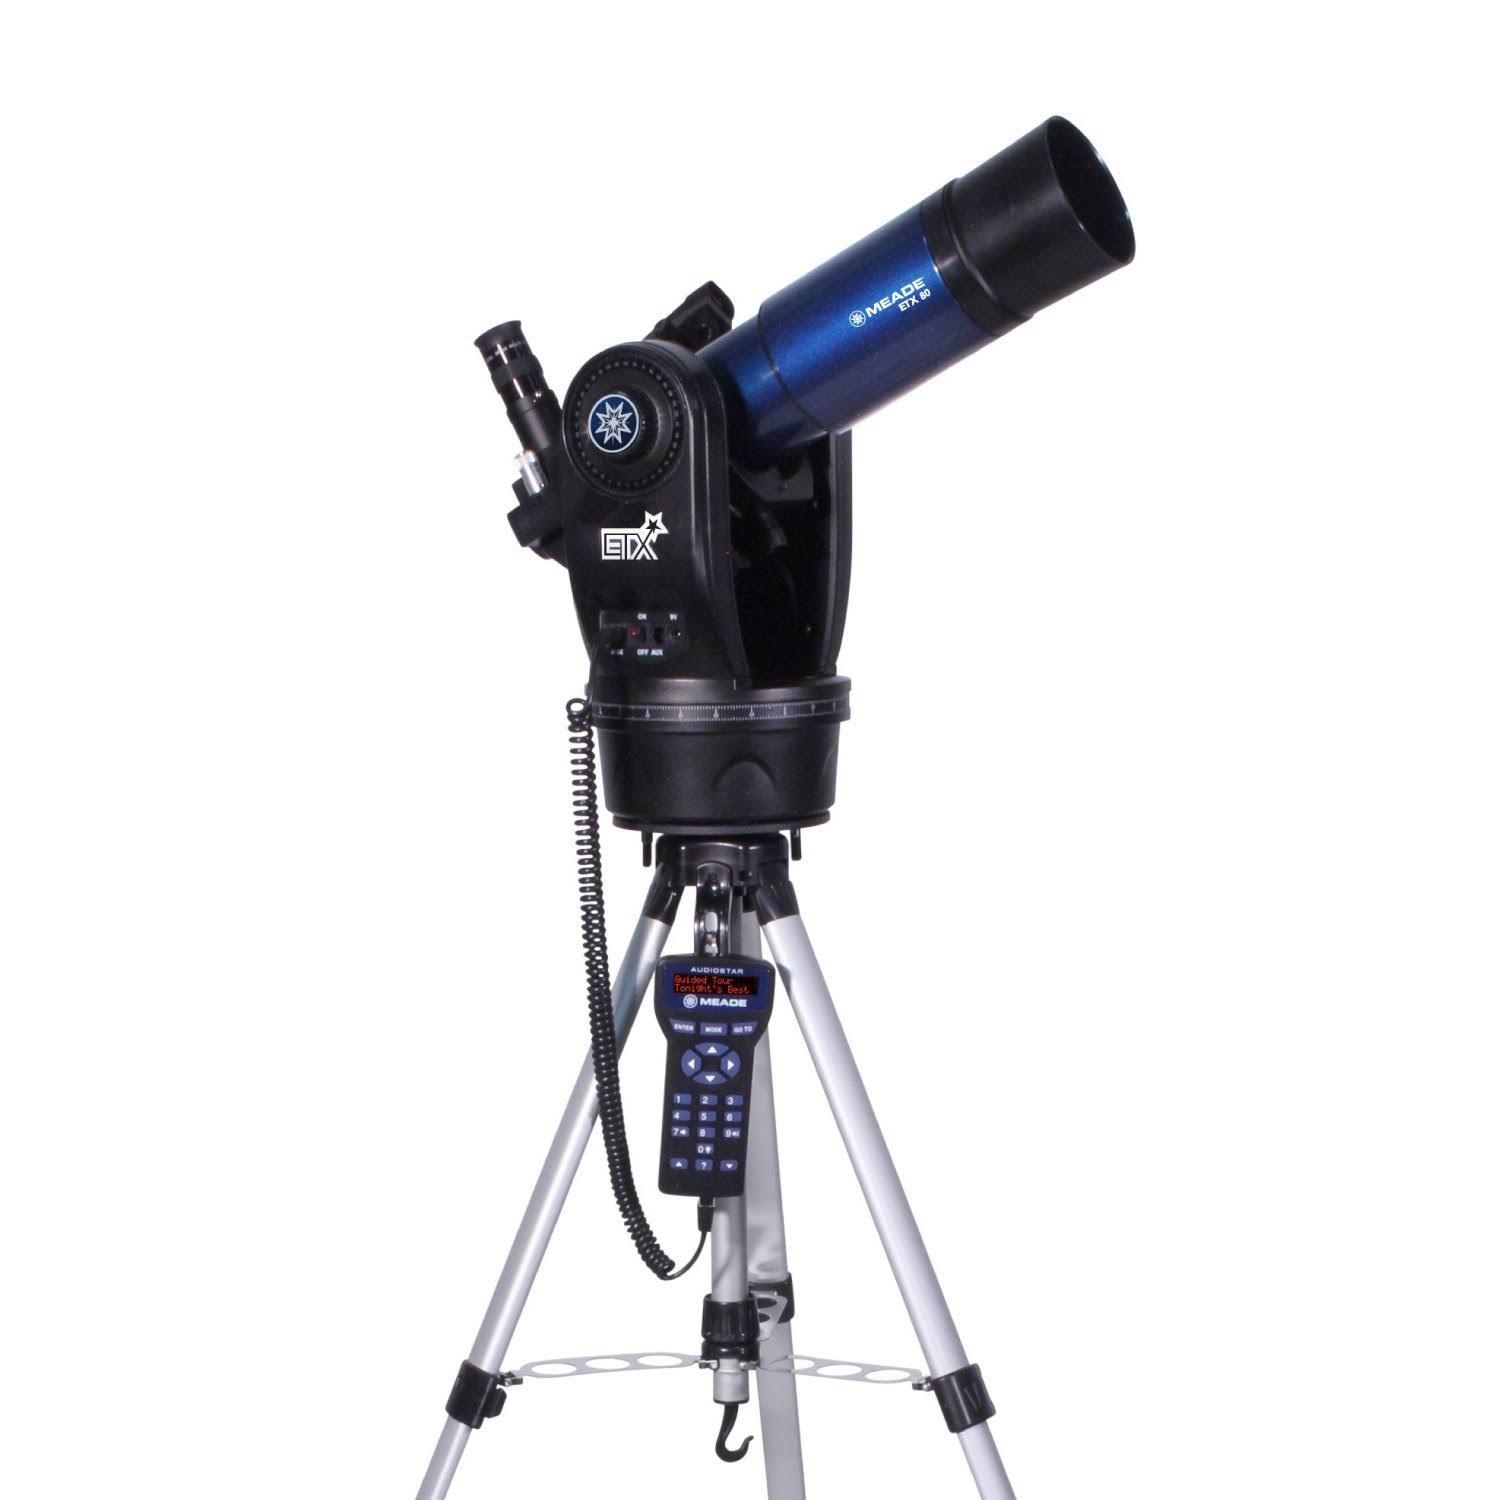 Meade الأدوات ETX80 Observer تلسكوب عاكس لوني مع حامل ثلاثي القوائم ميداني قابل للتعديل وعدسات وحقيبة ظهر فاخرة (205002)